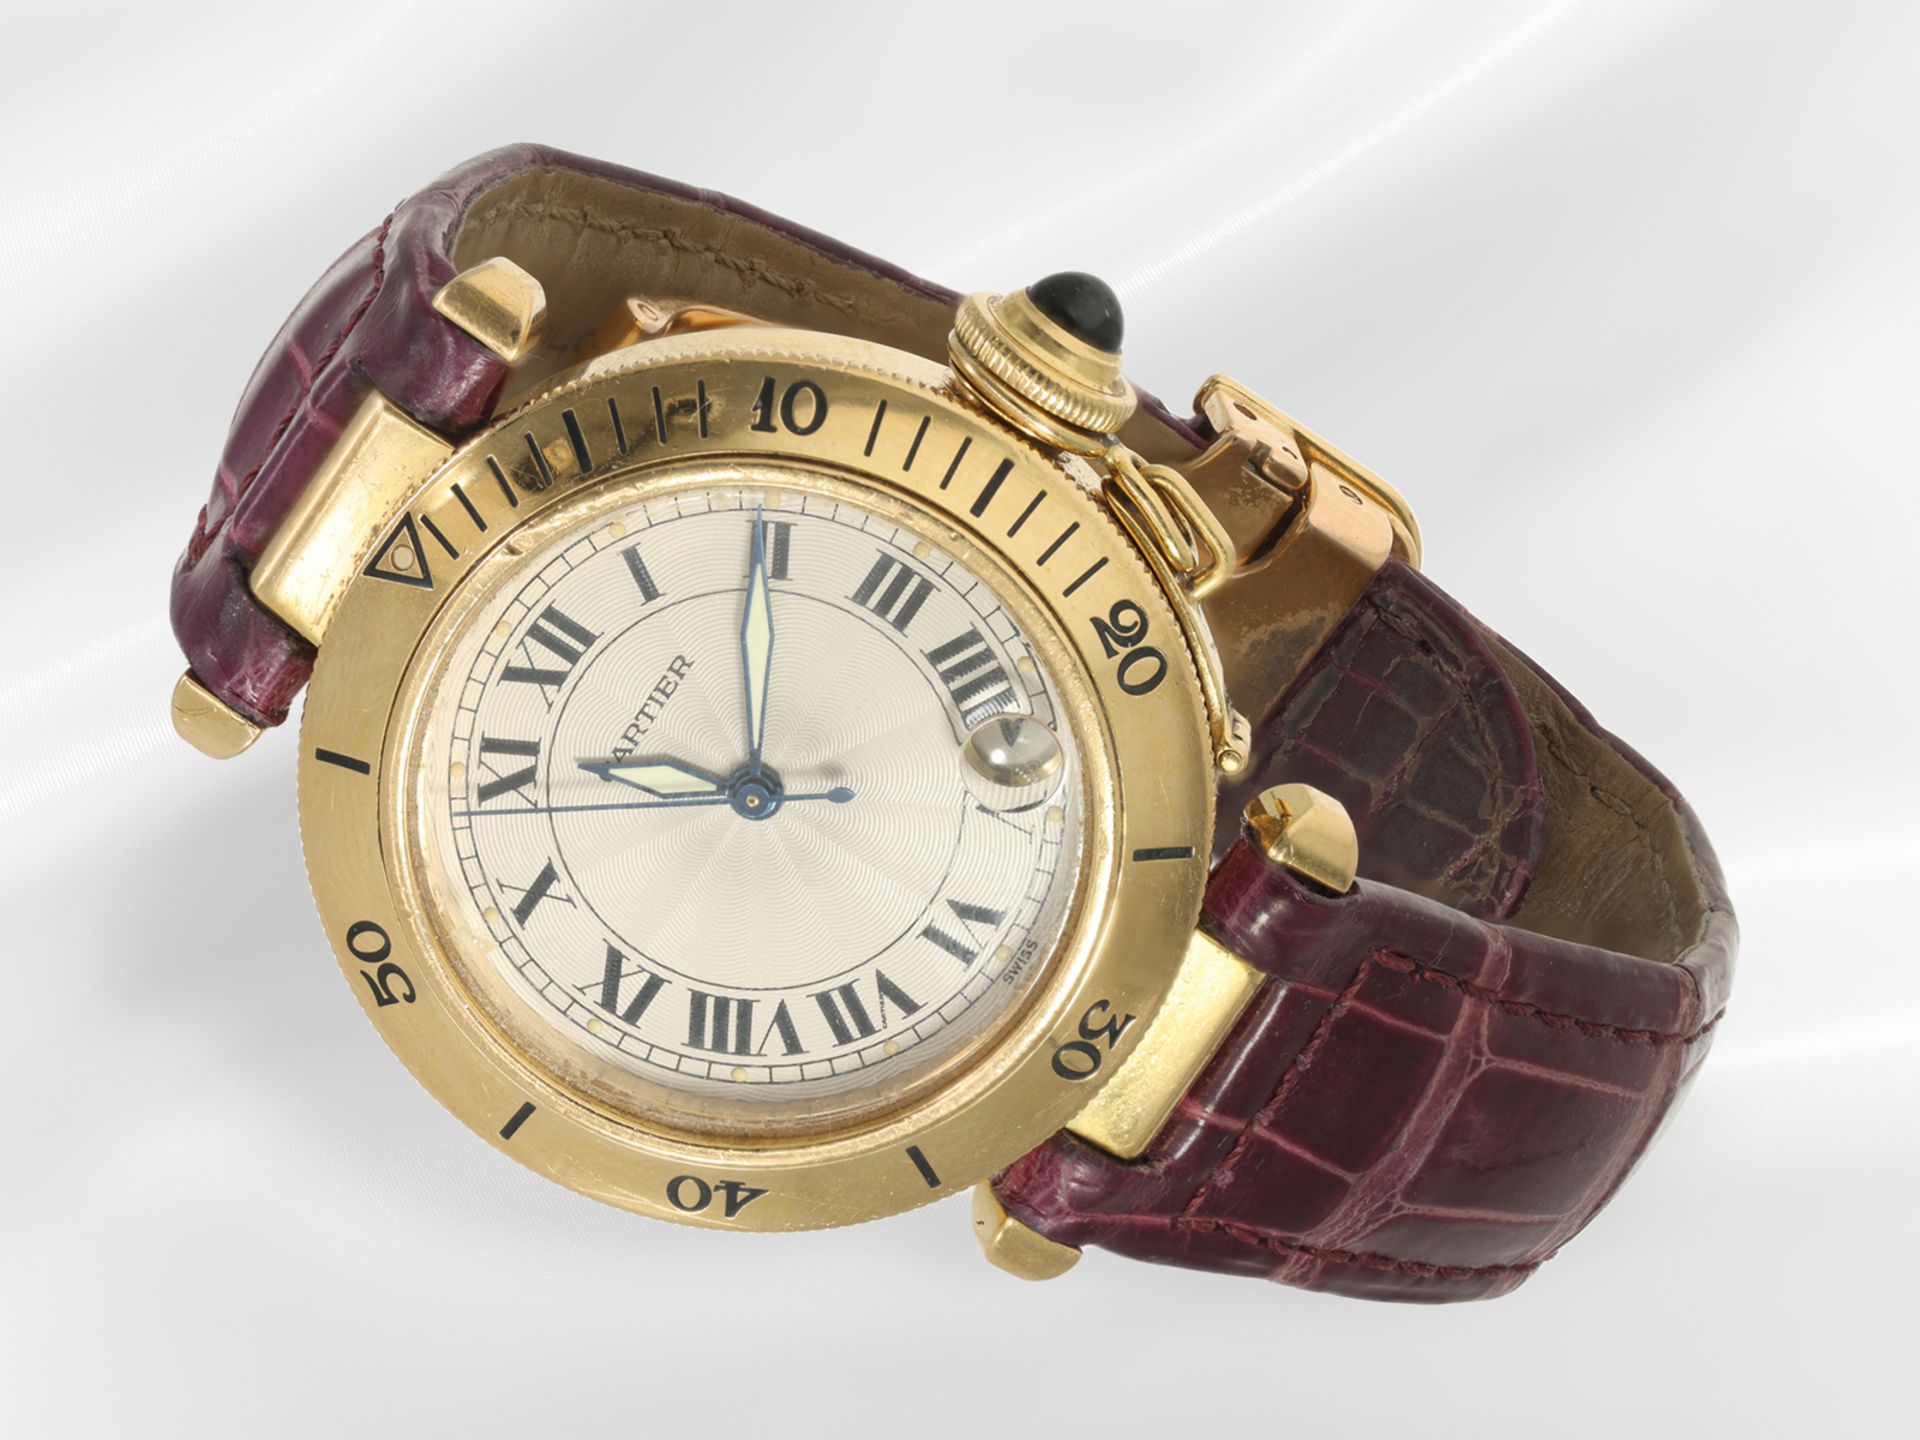 Armbanduhr: luxuriöse Cartier Pasha Automatic Medium Ref.1035, Herrenuhr aus 18K Gold mit Originalba